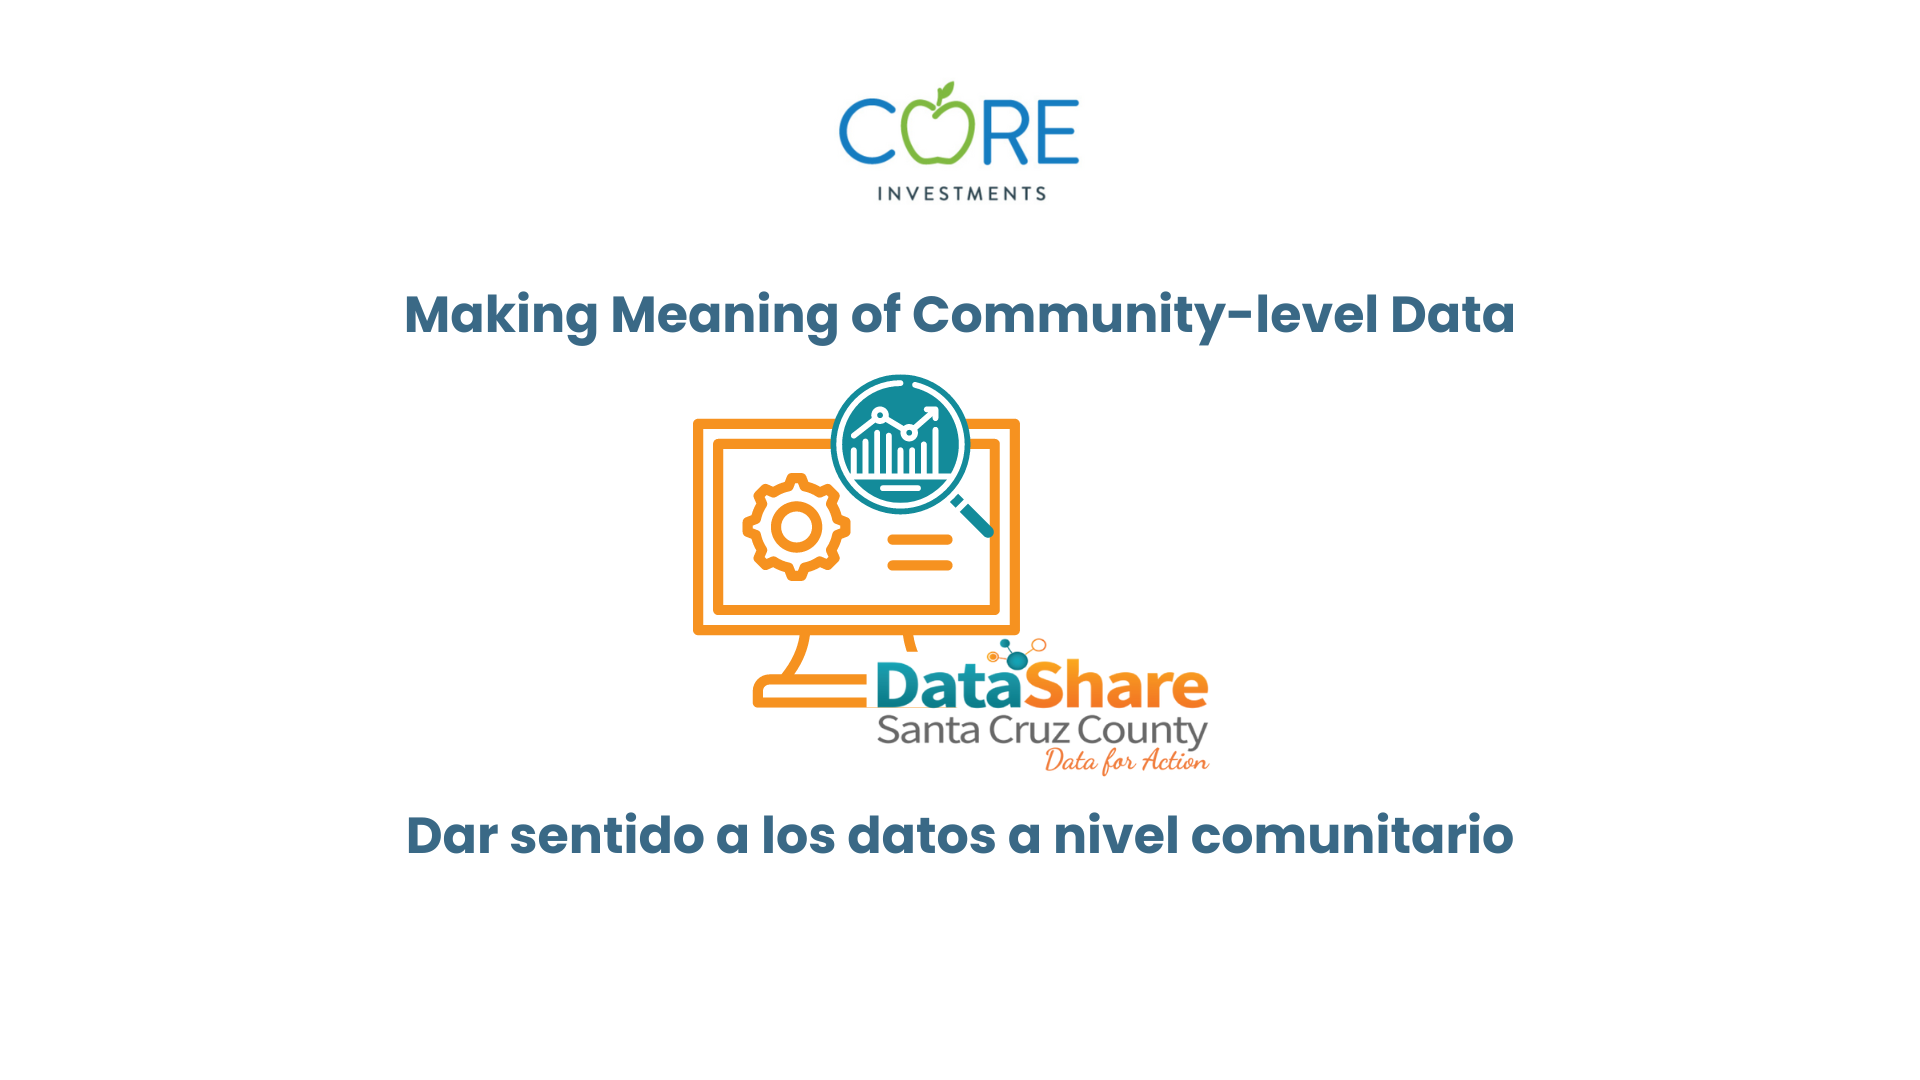 Dar sentido a los datos comunitarios